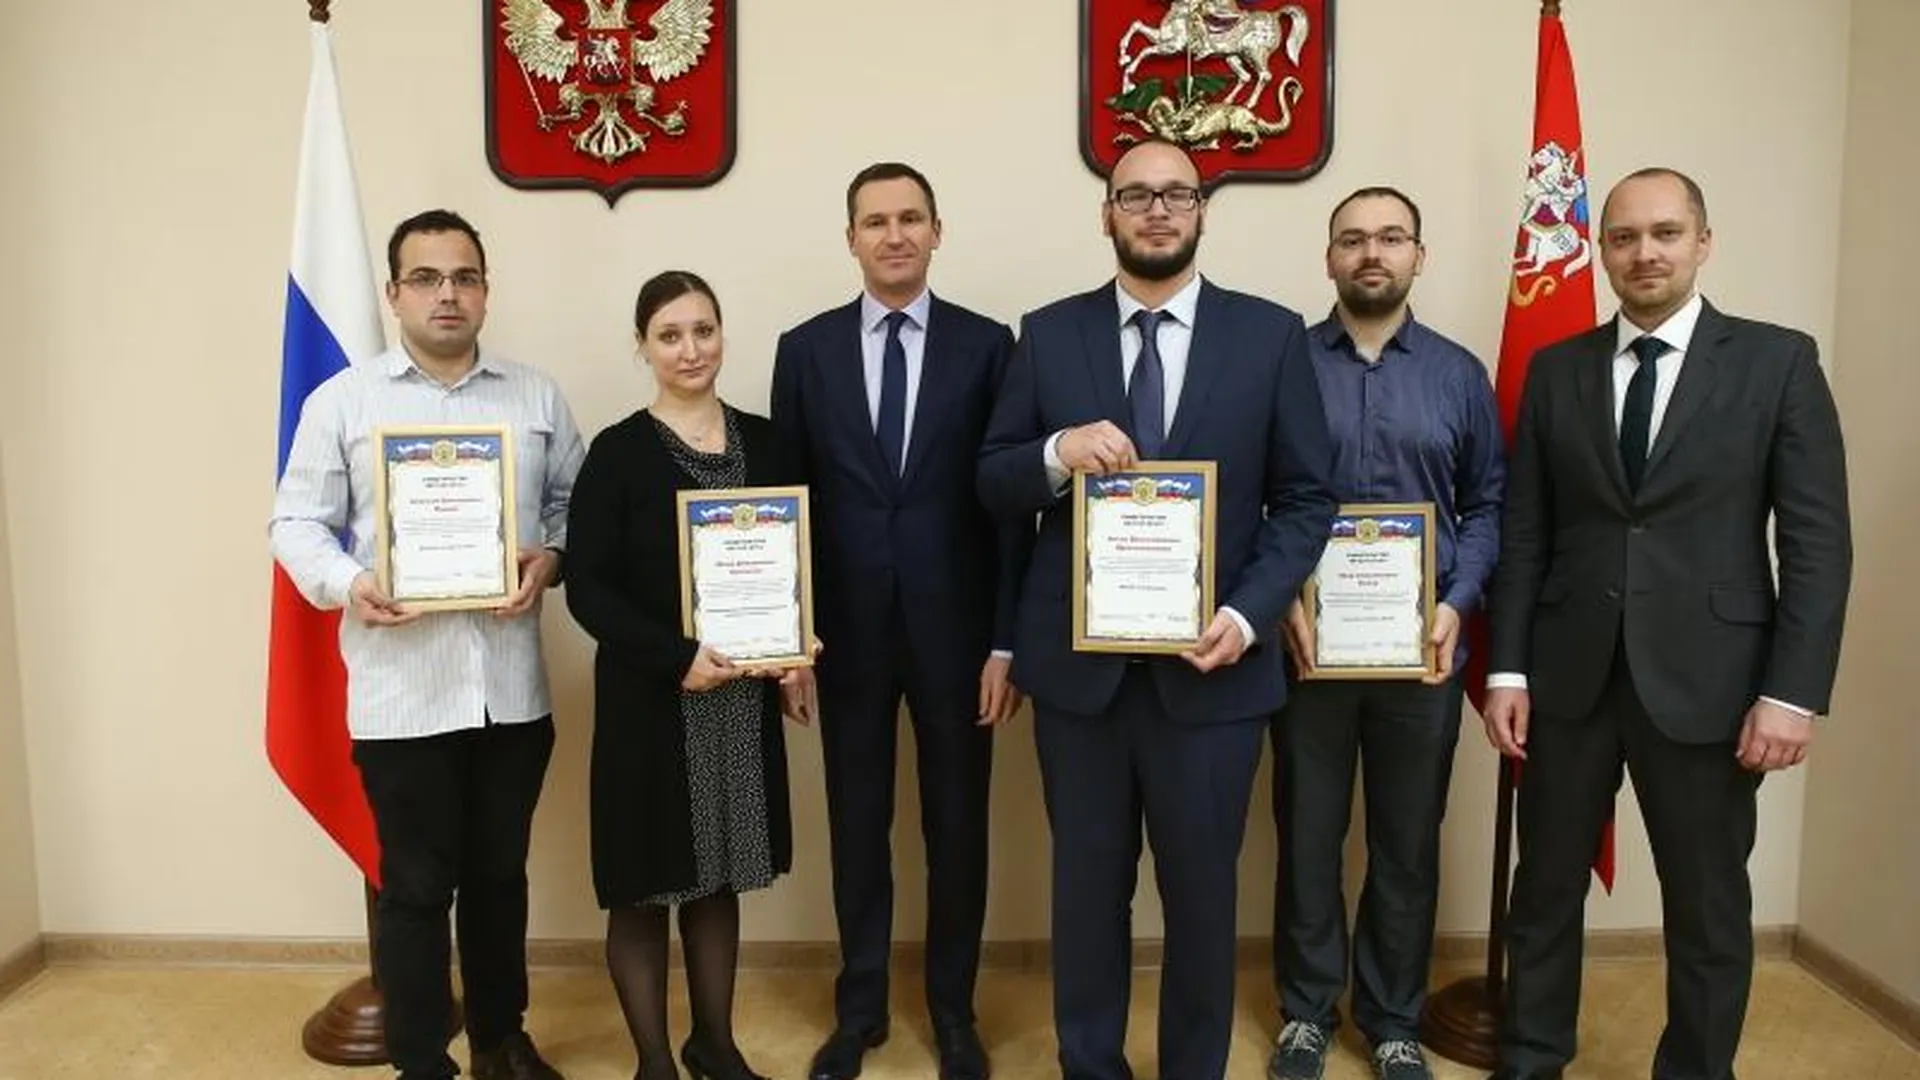 Пяти молодым ученым из Подмосковья вручили сертификаты на президентские гранты